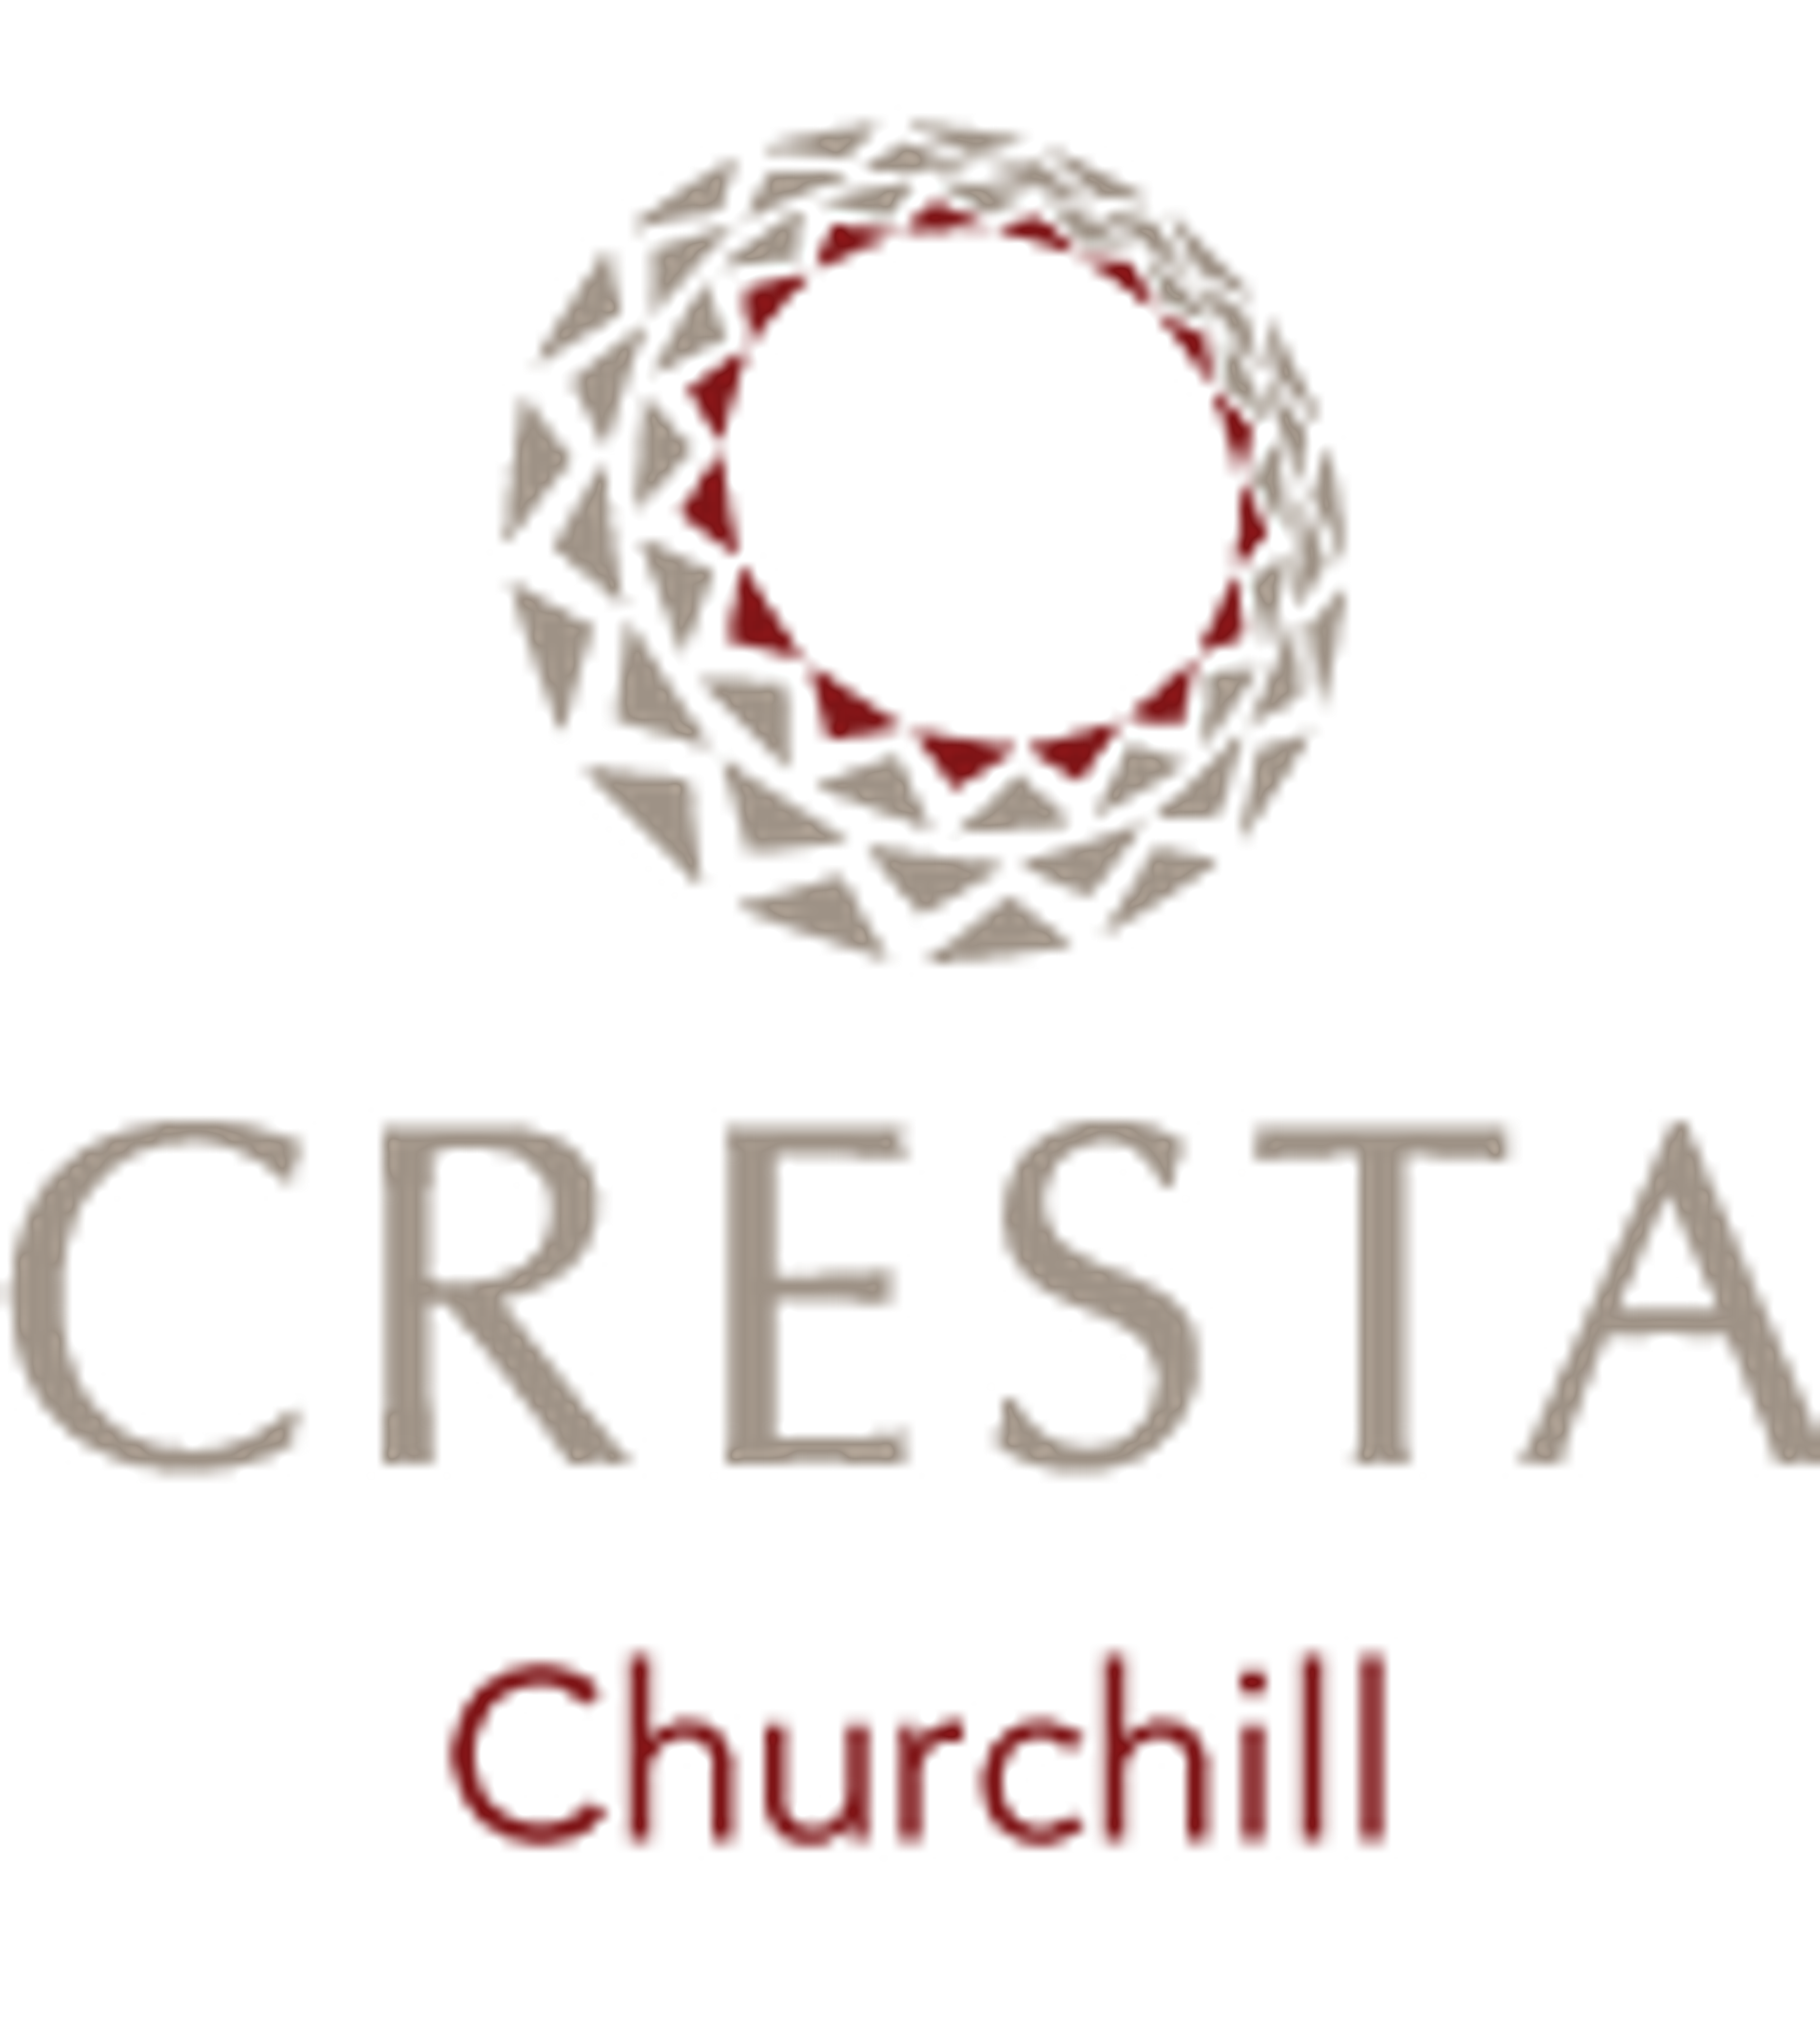 Small Logos For Cresta Churchill